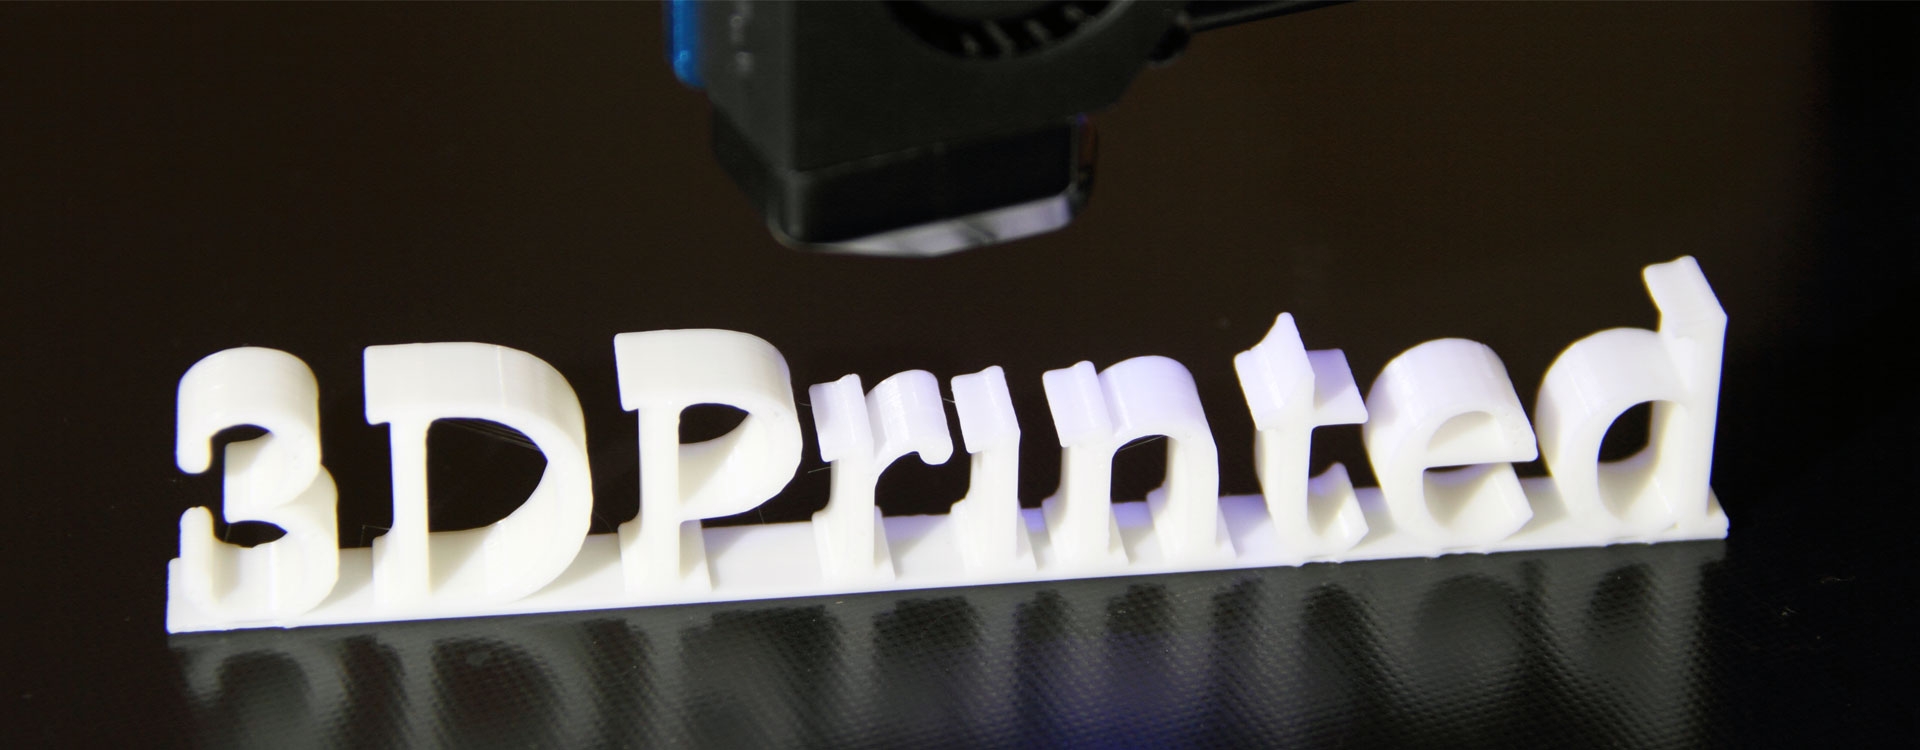 Що можна надрукувати на 3D-принтері?